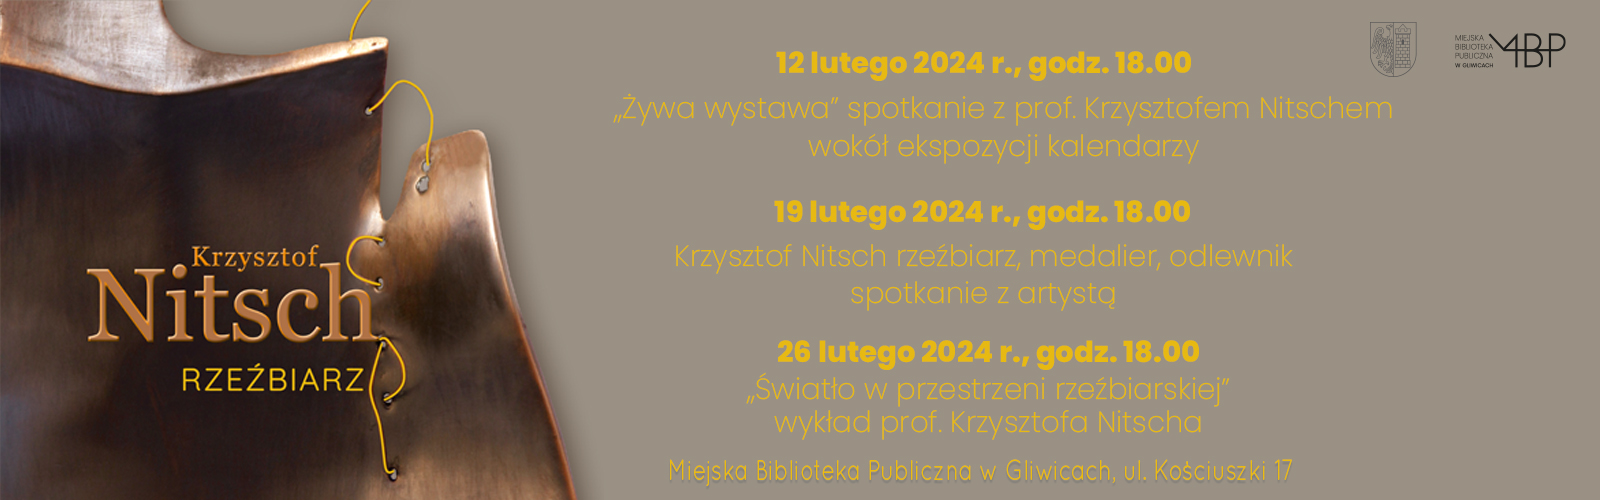 Baner z informacją o spotkaniu z Krzysztofem Nitsch